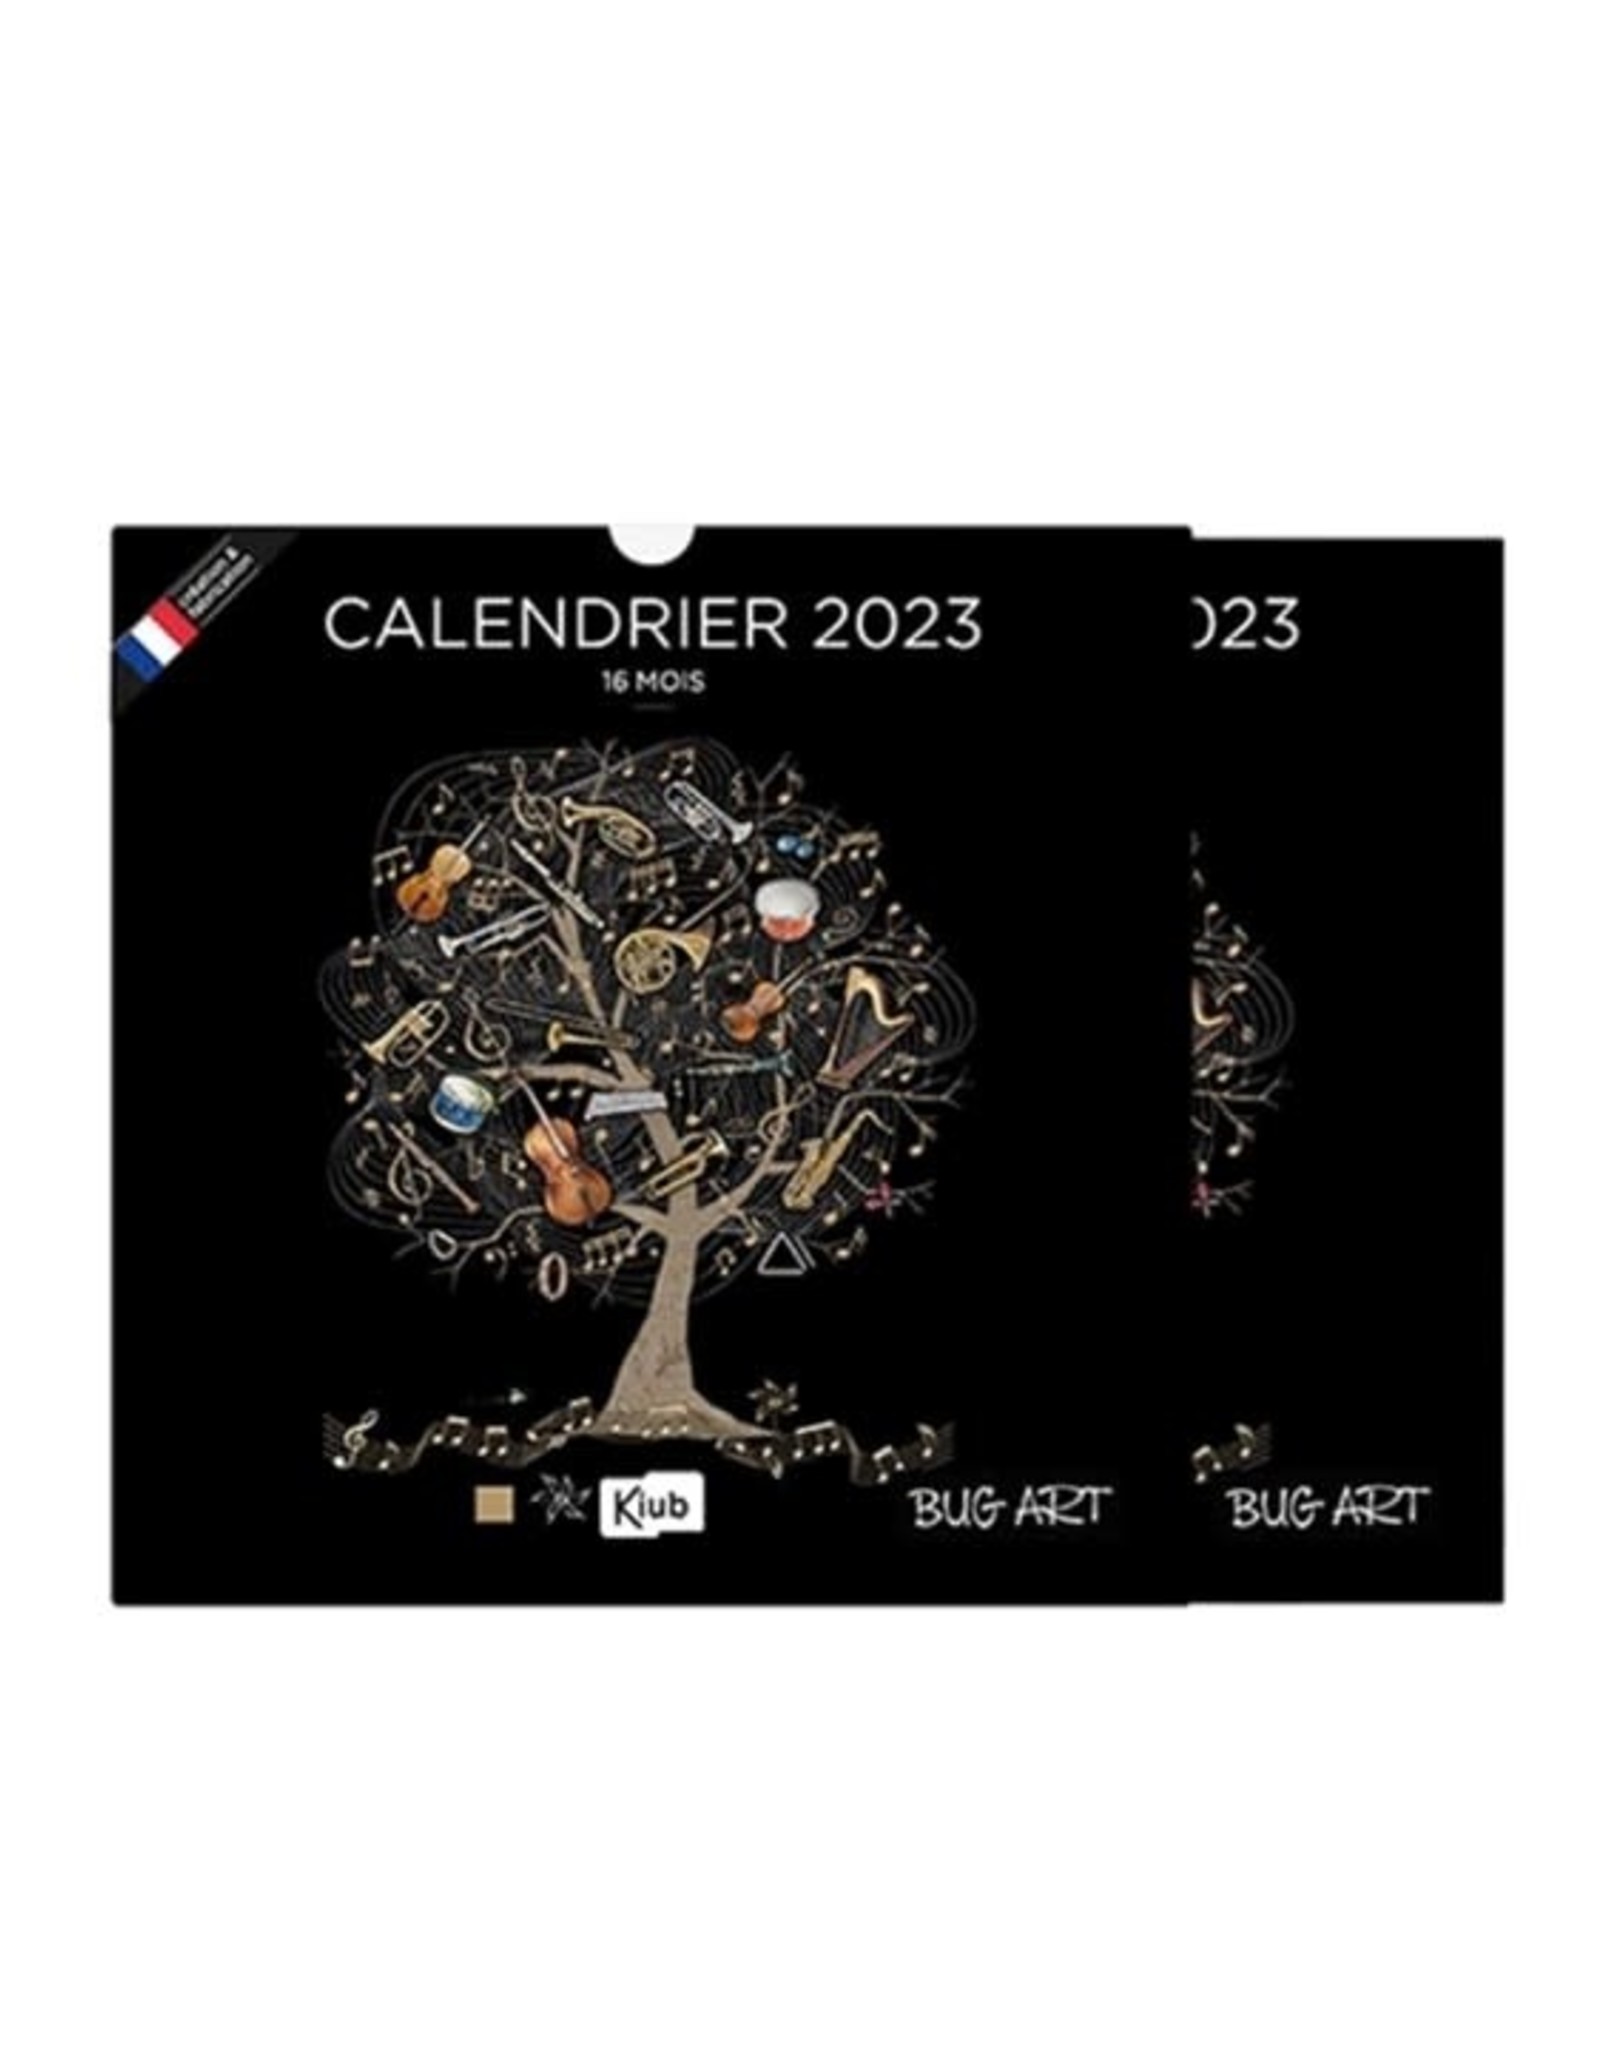 Calendrier 2023 Bug art -  Fond noir